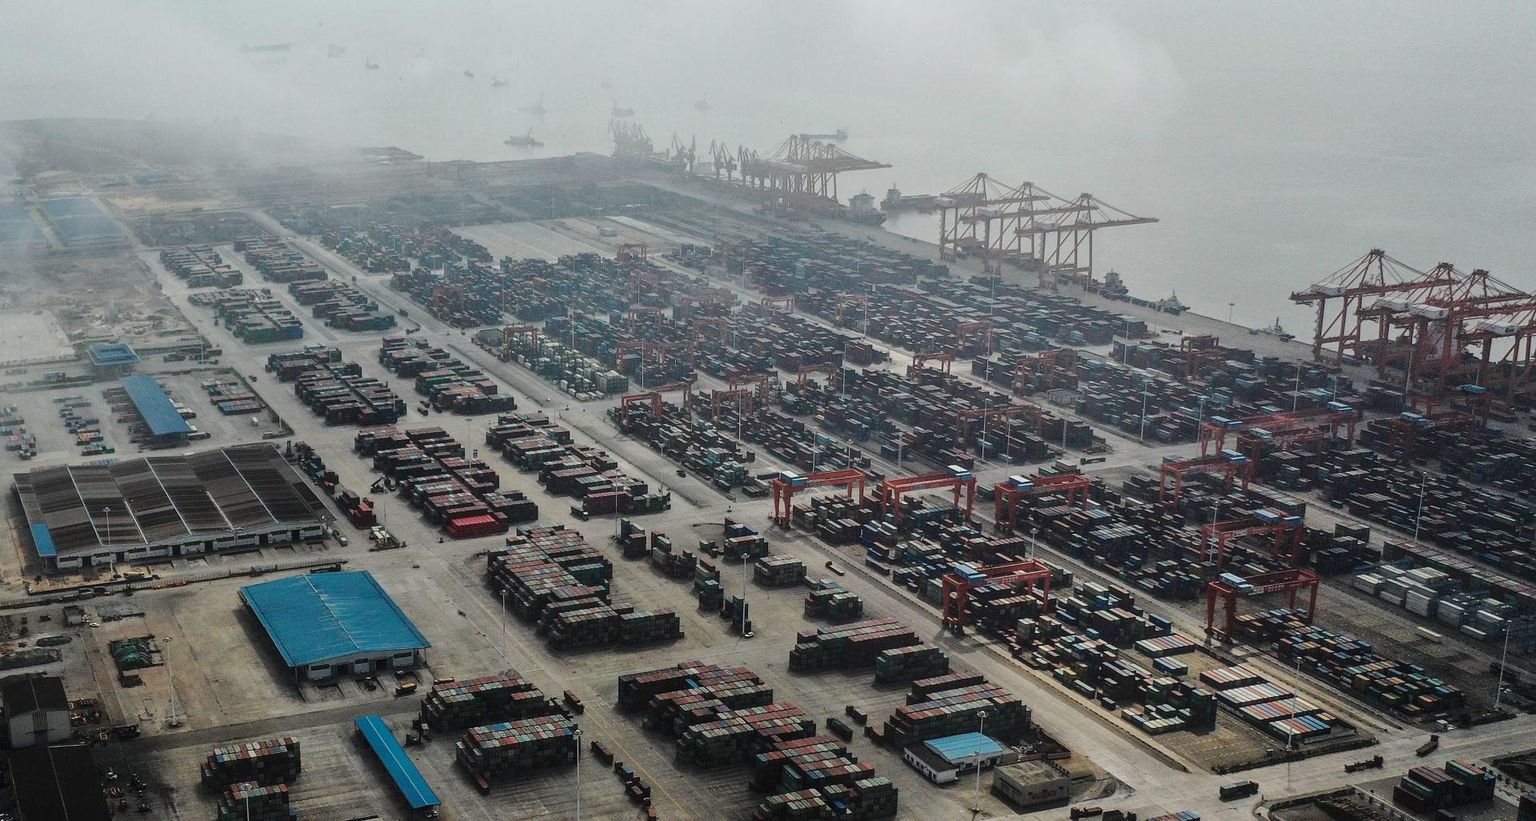 Konteinerid Hiinas Qinzhou sadamas. Hiina ekspordimaht on pärast koroonakevadet kasvanud ja vabade konteinerite kättesaadavuse ­probleem Hiina konteineriterminalides pole lahenduseni jõudnud.